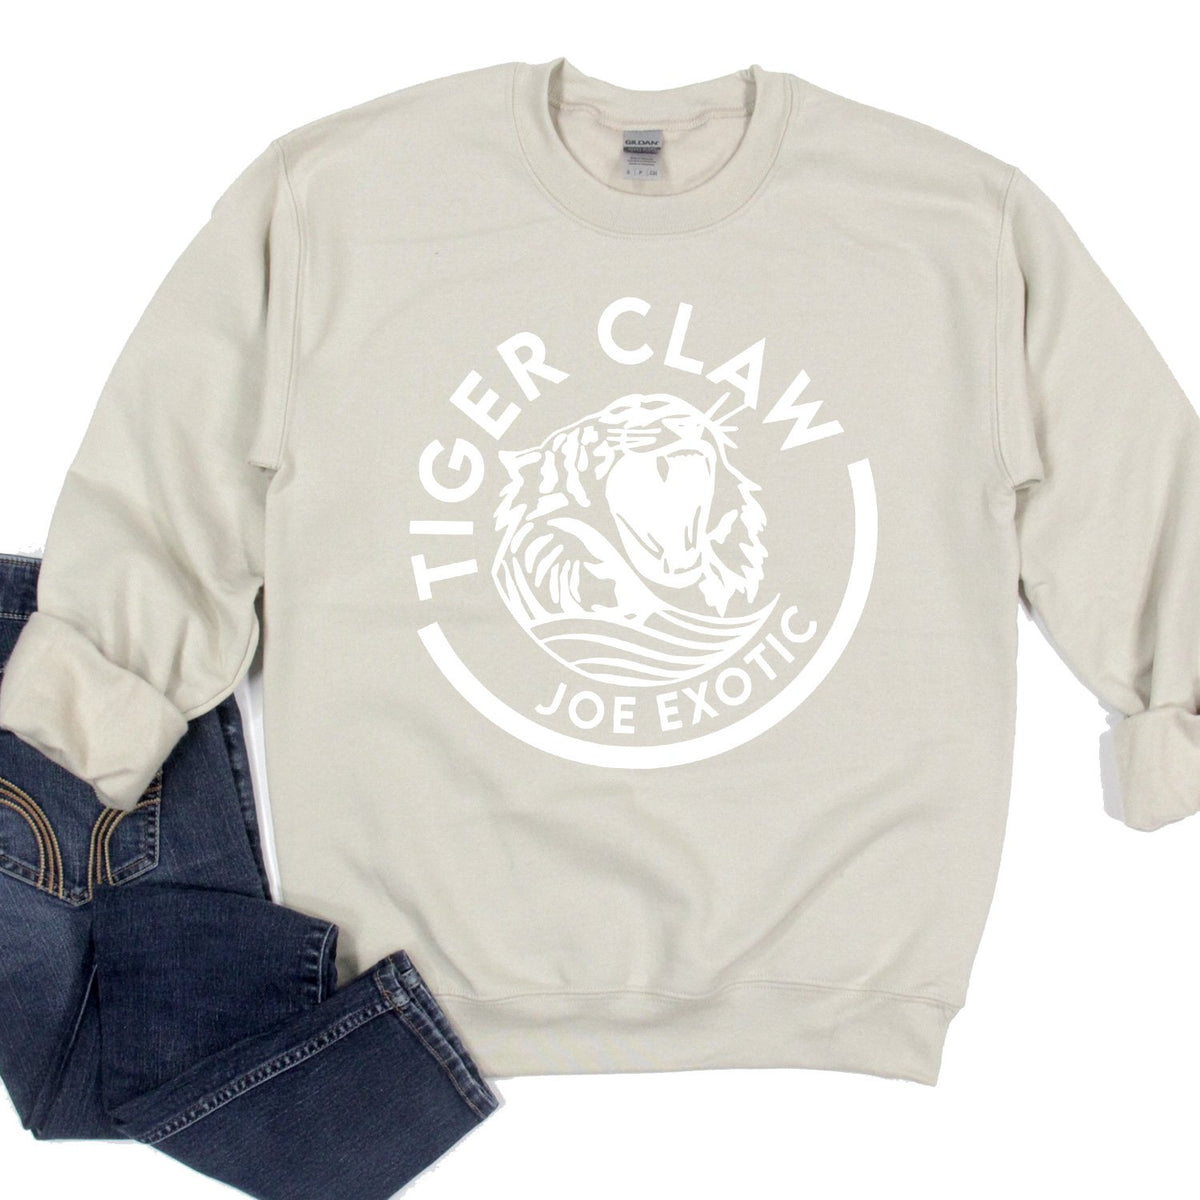 Tiger Claw Joe Exotic - Long Sleeve Heavy Crewneck Sweatshirt